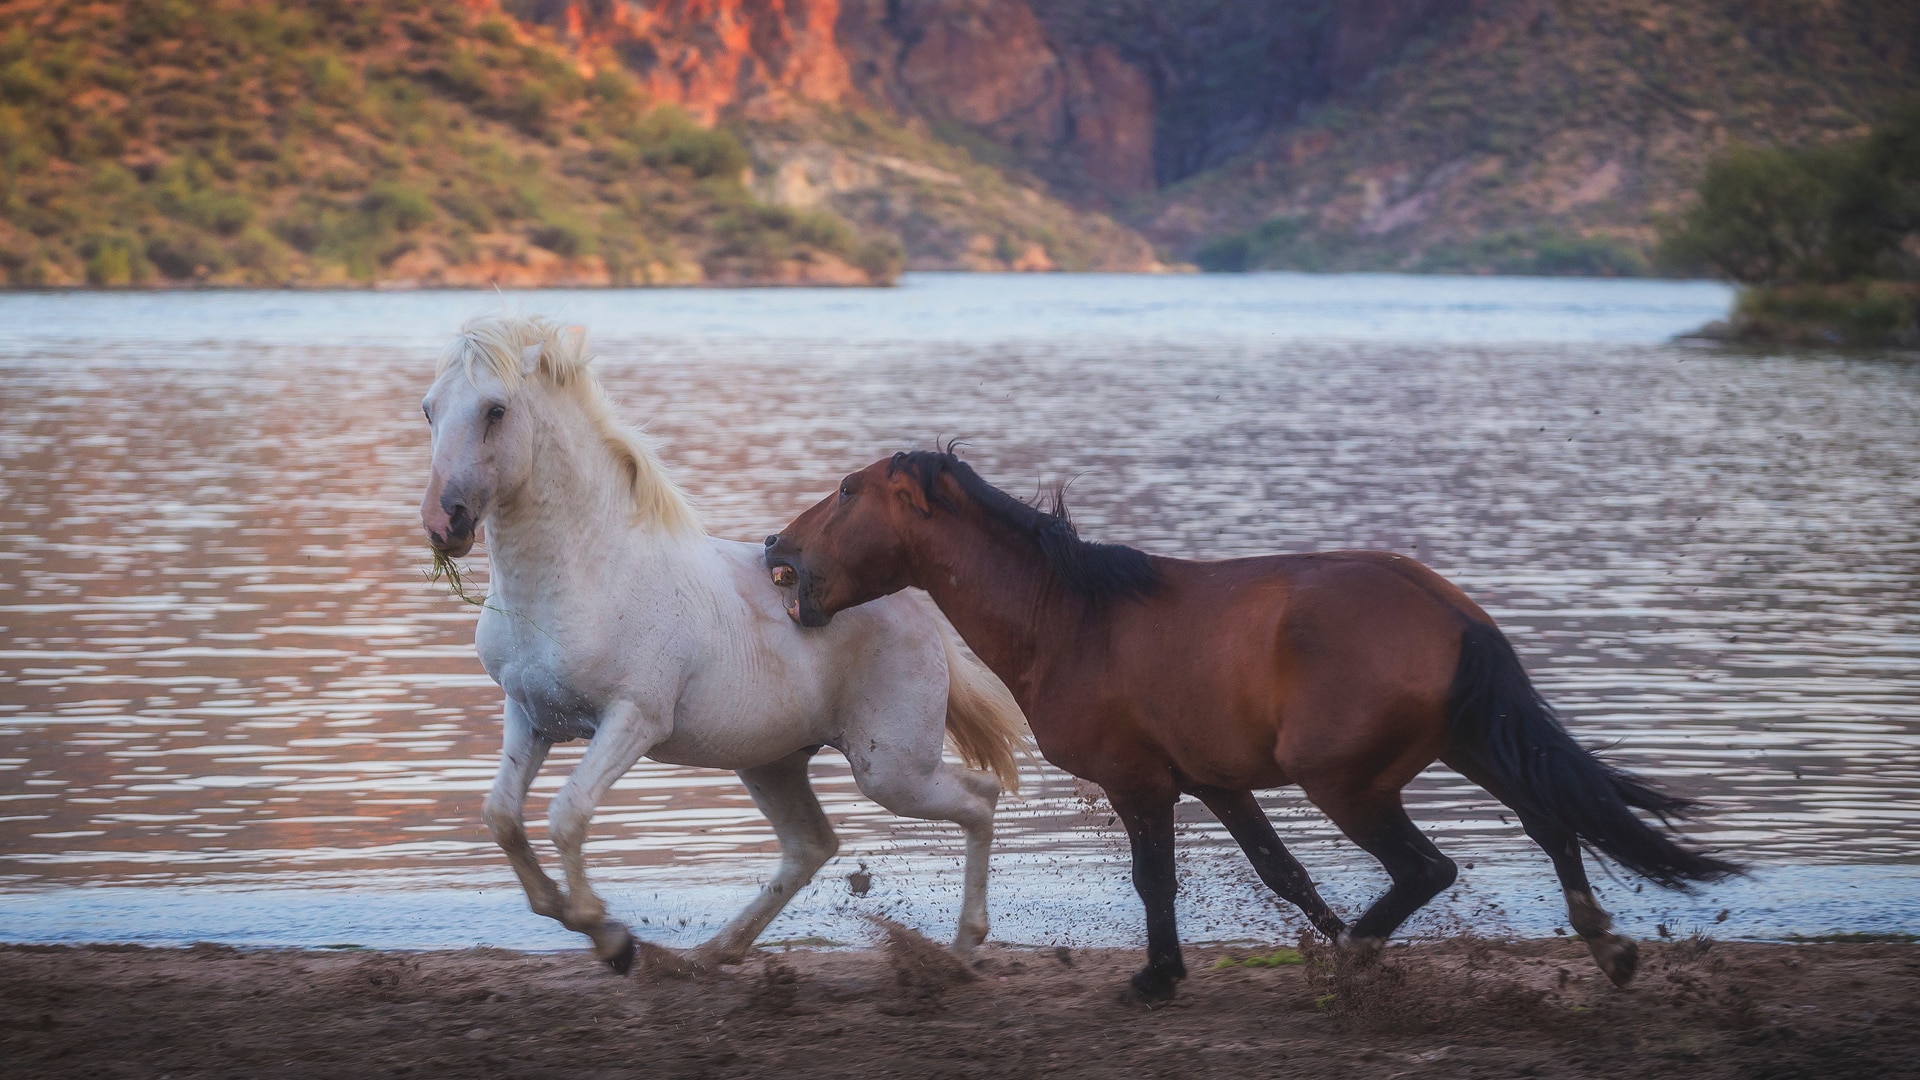 Horses fight near a desert lake.